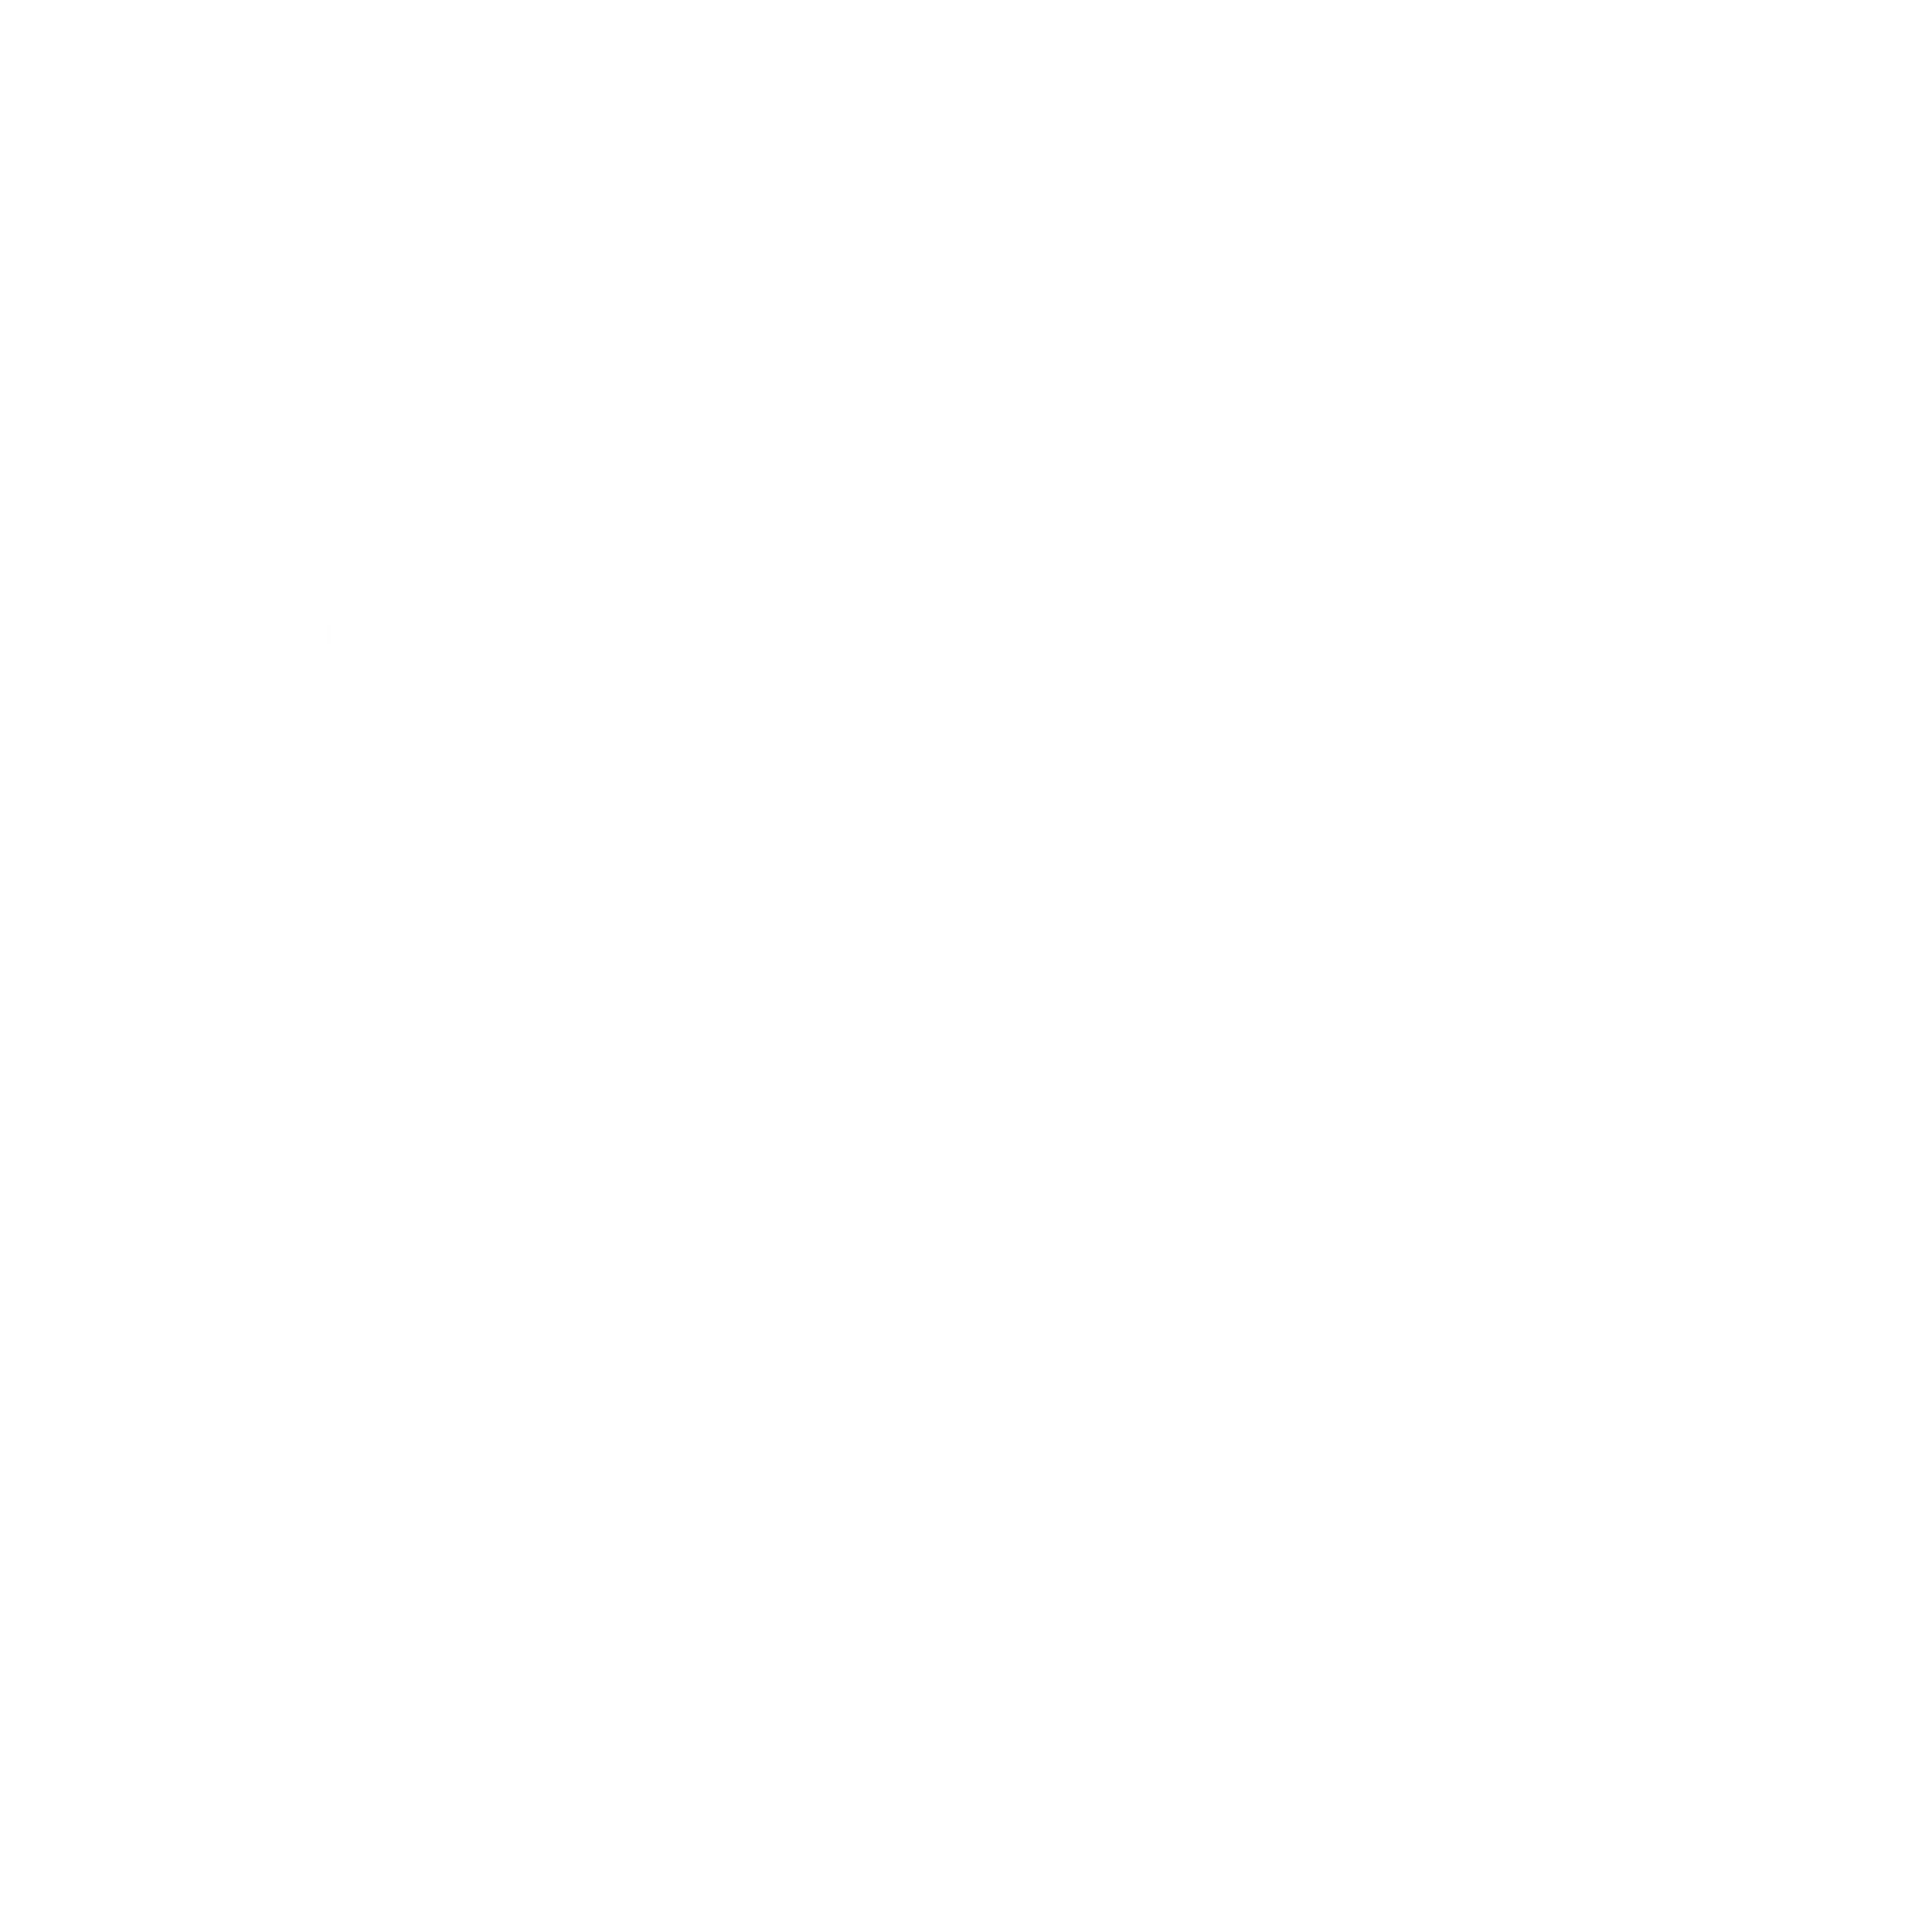 Waecquestions